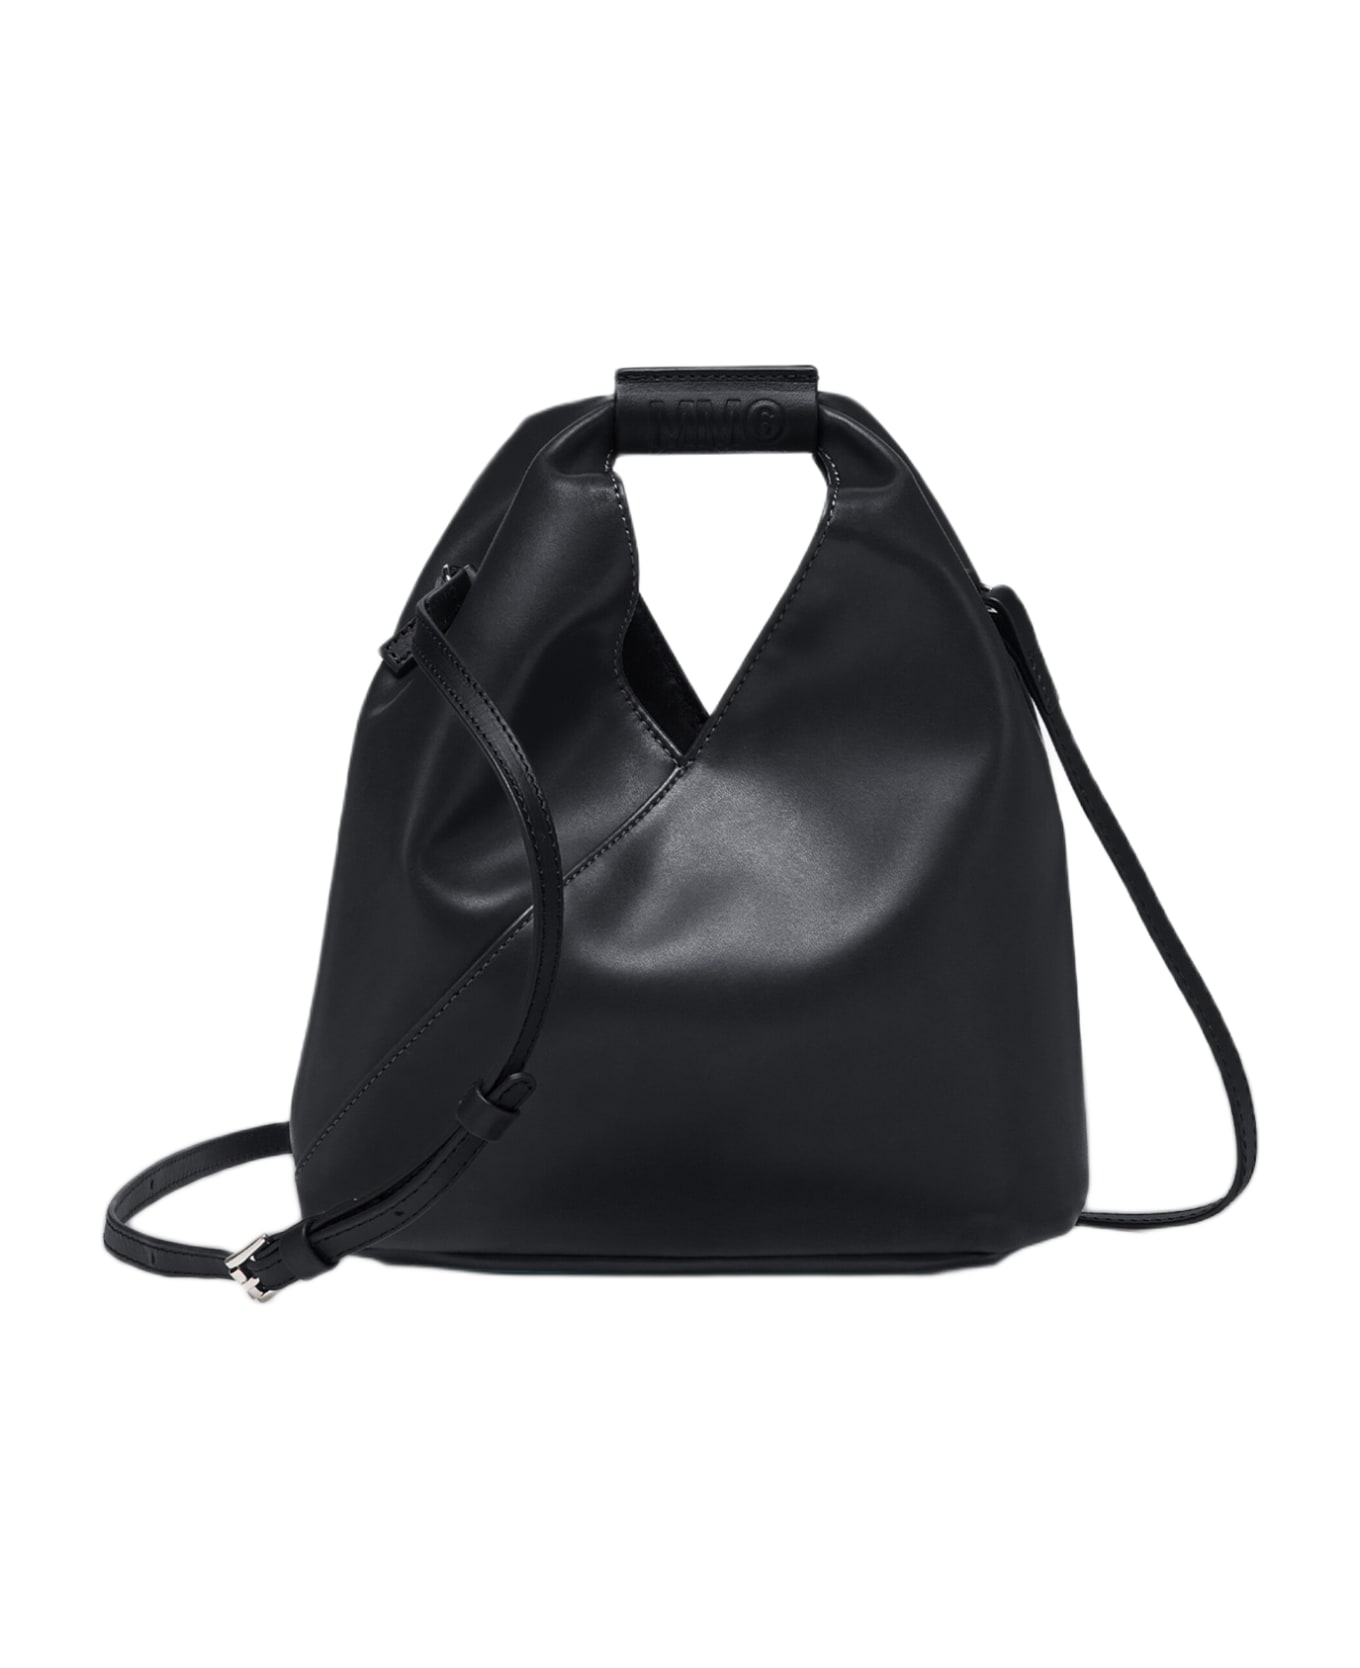 MM6 Maison Margiela Borsa Mano Black syntethic leather Japanese bag with shoulder strap - Nero トートバッグ